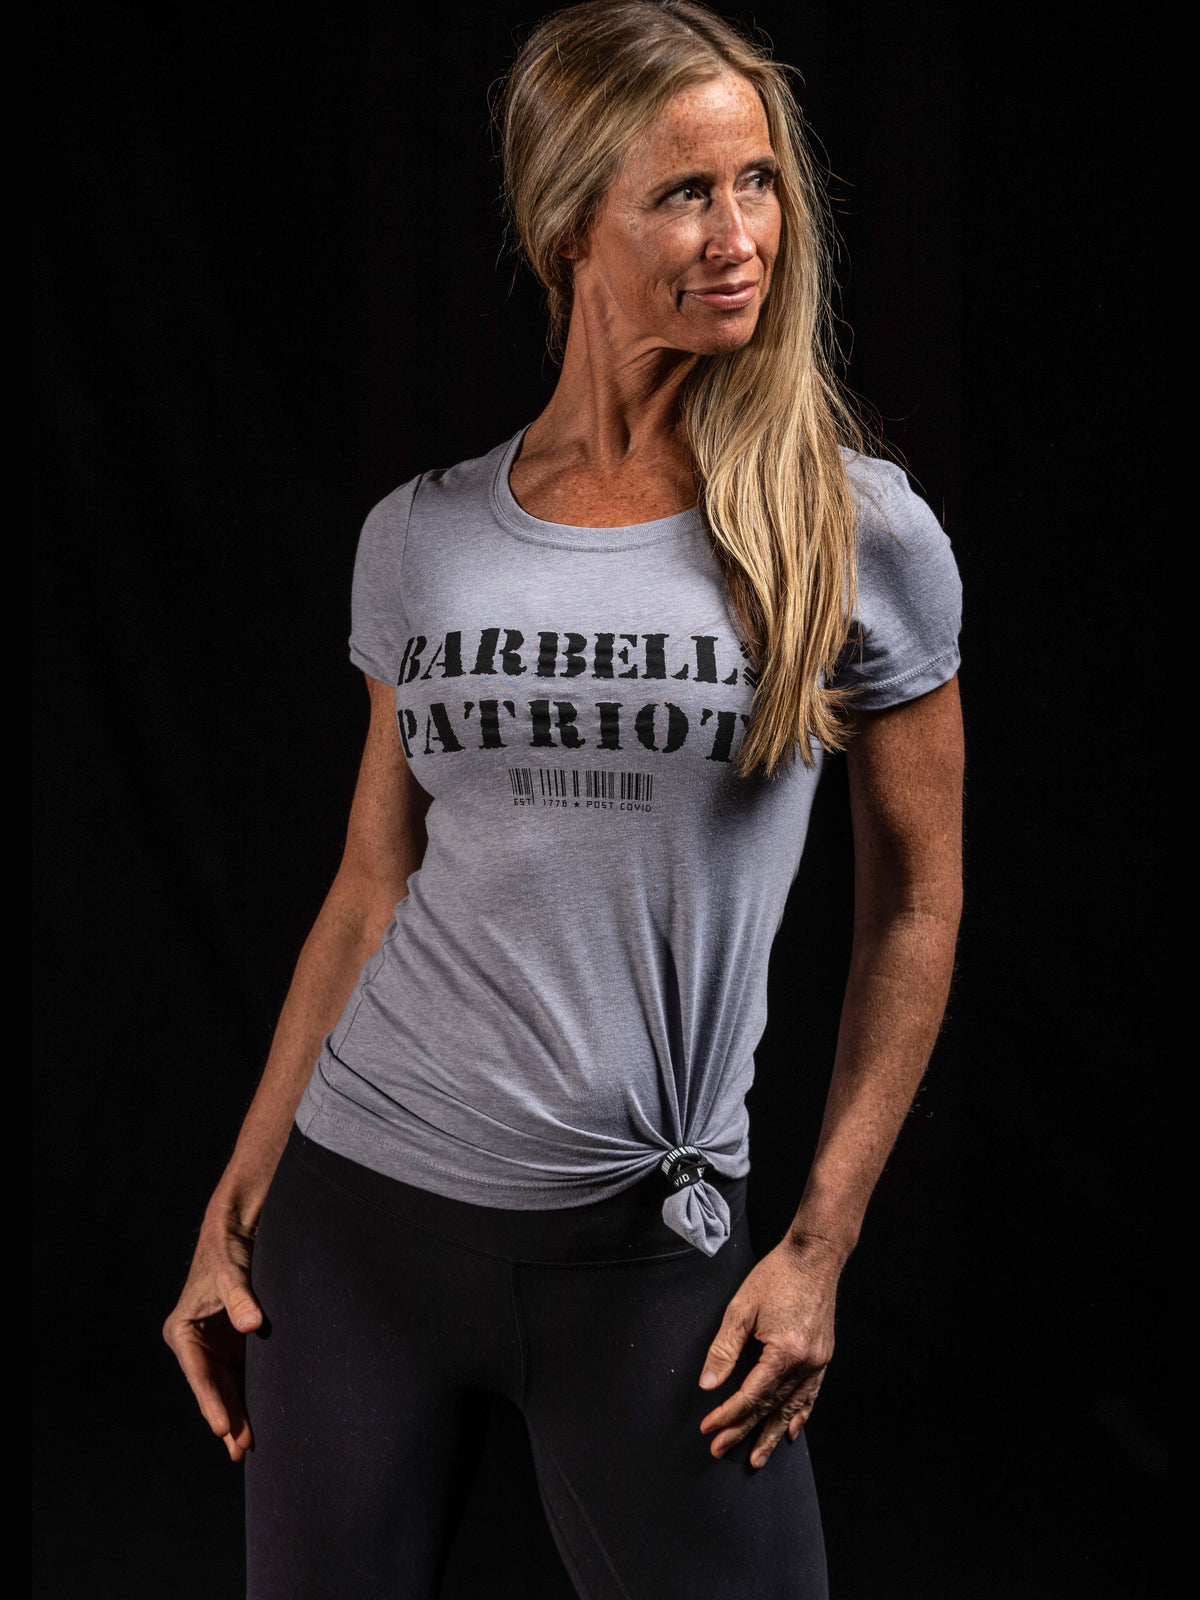 BARBELL PATRIOTS Womens Crewneck T-Shirt